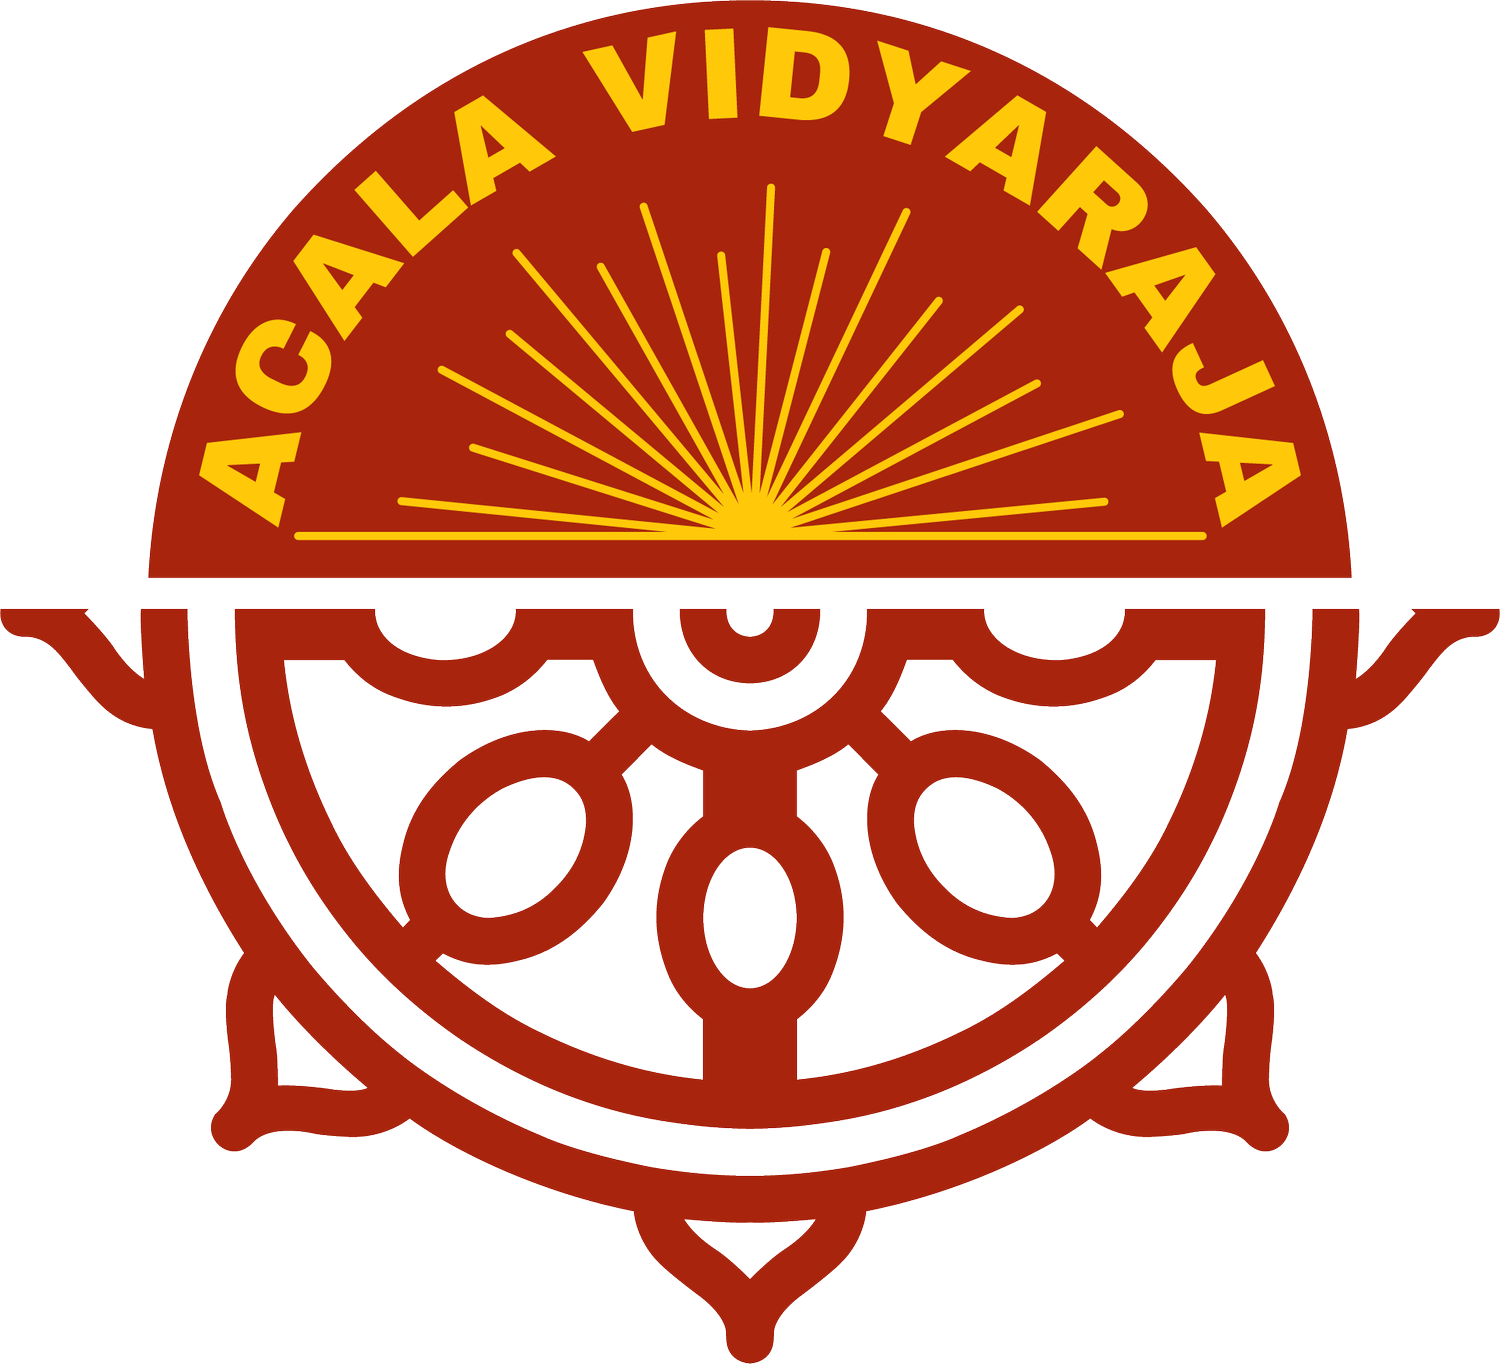 Acala Vidyaraja